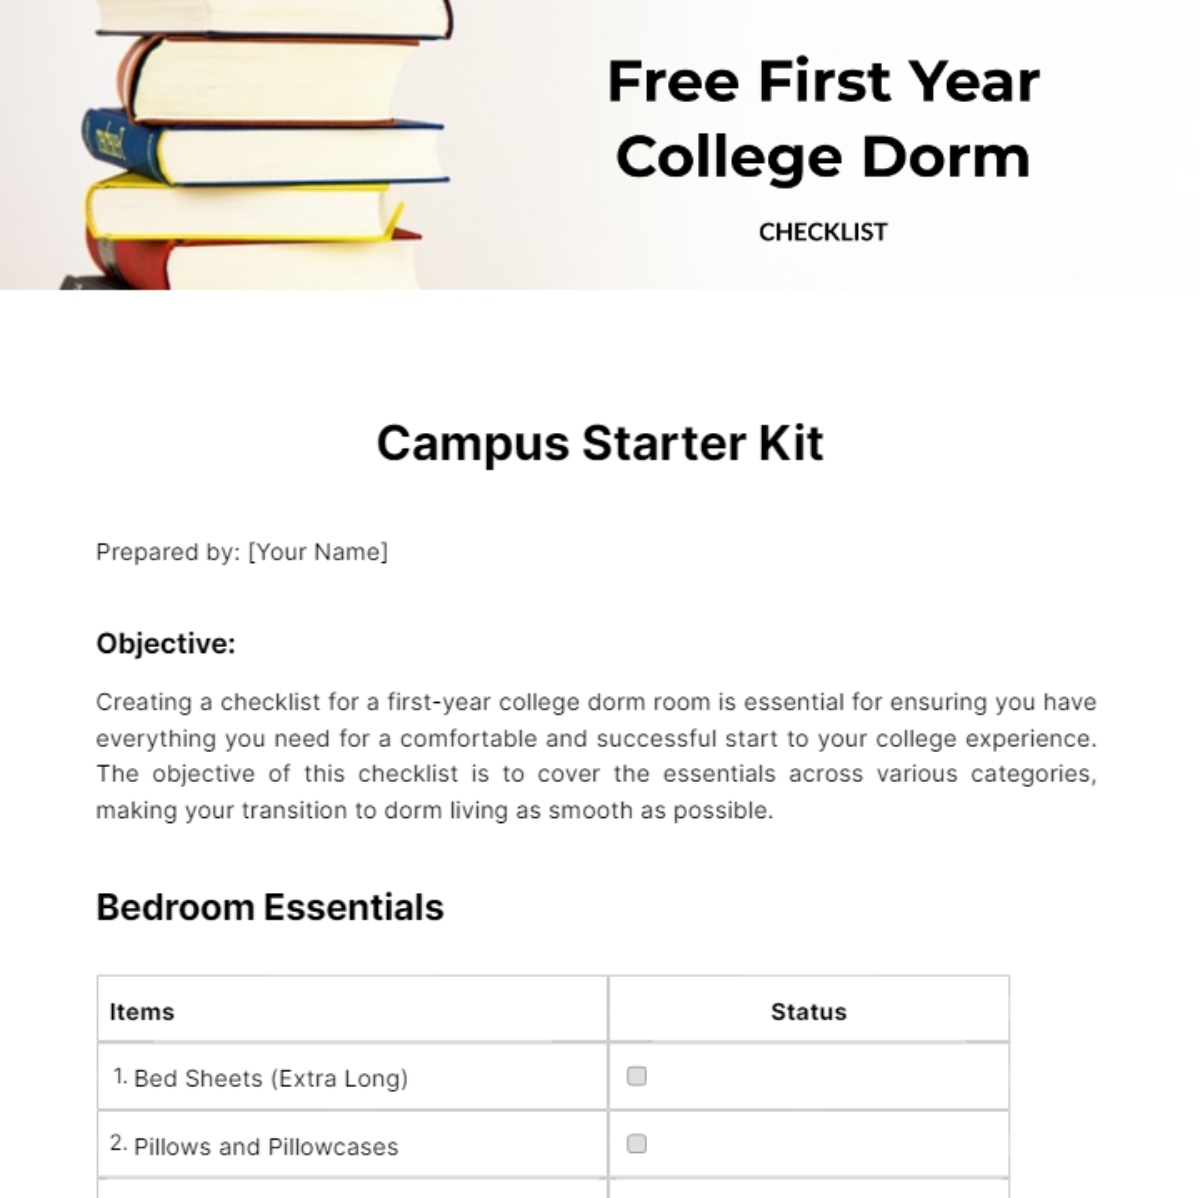 First Year College Dorm Checklist Template